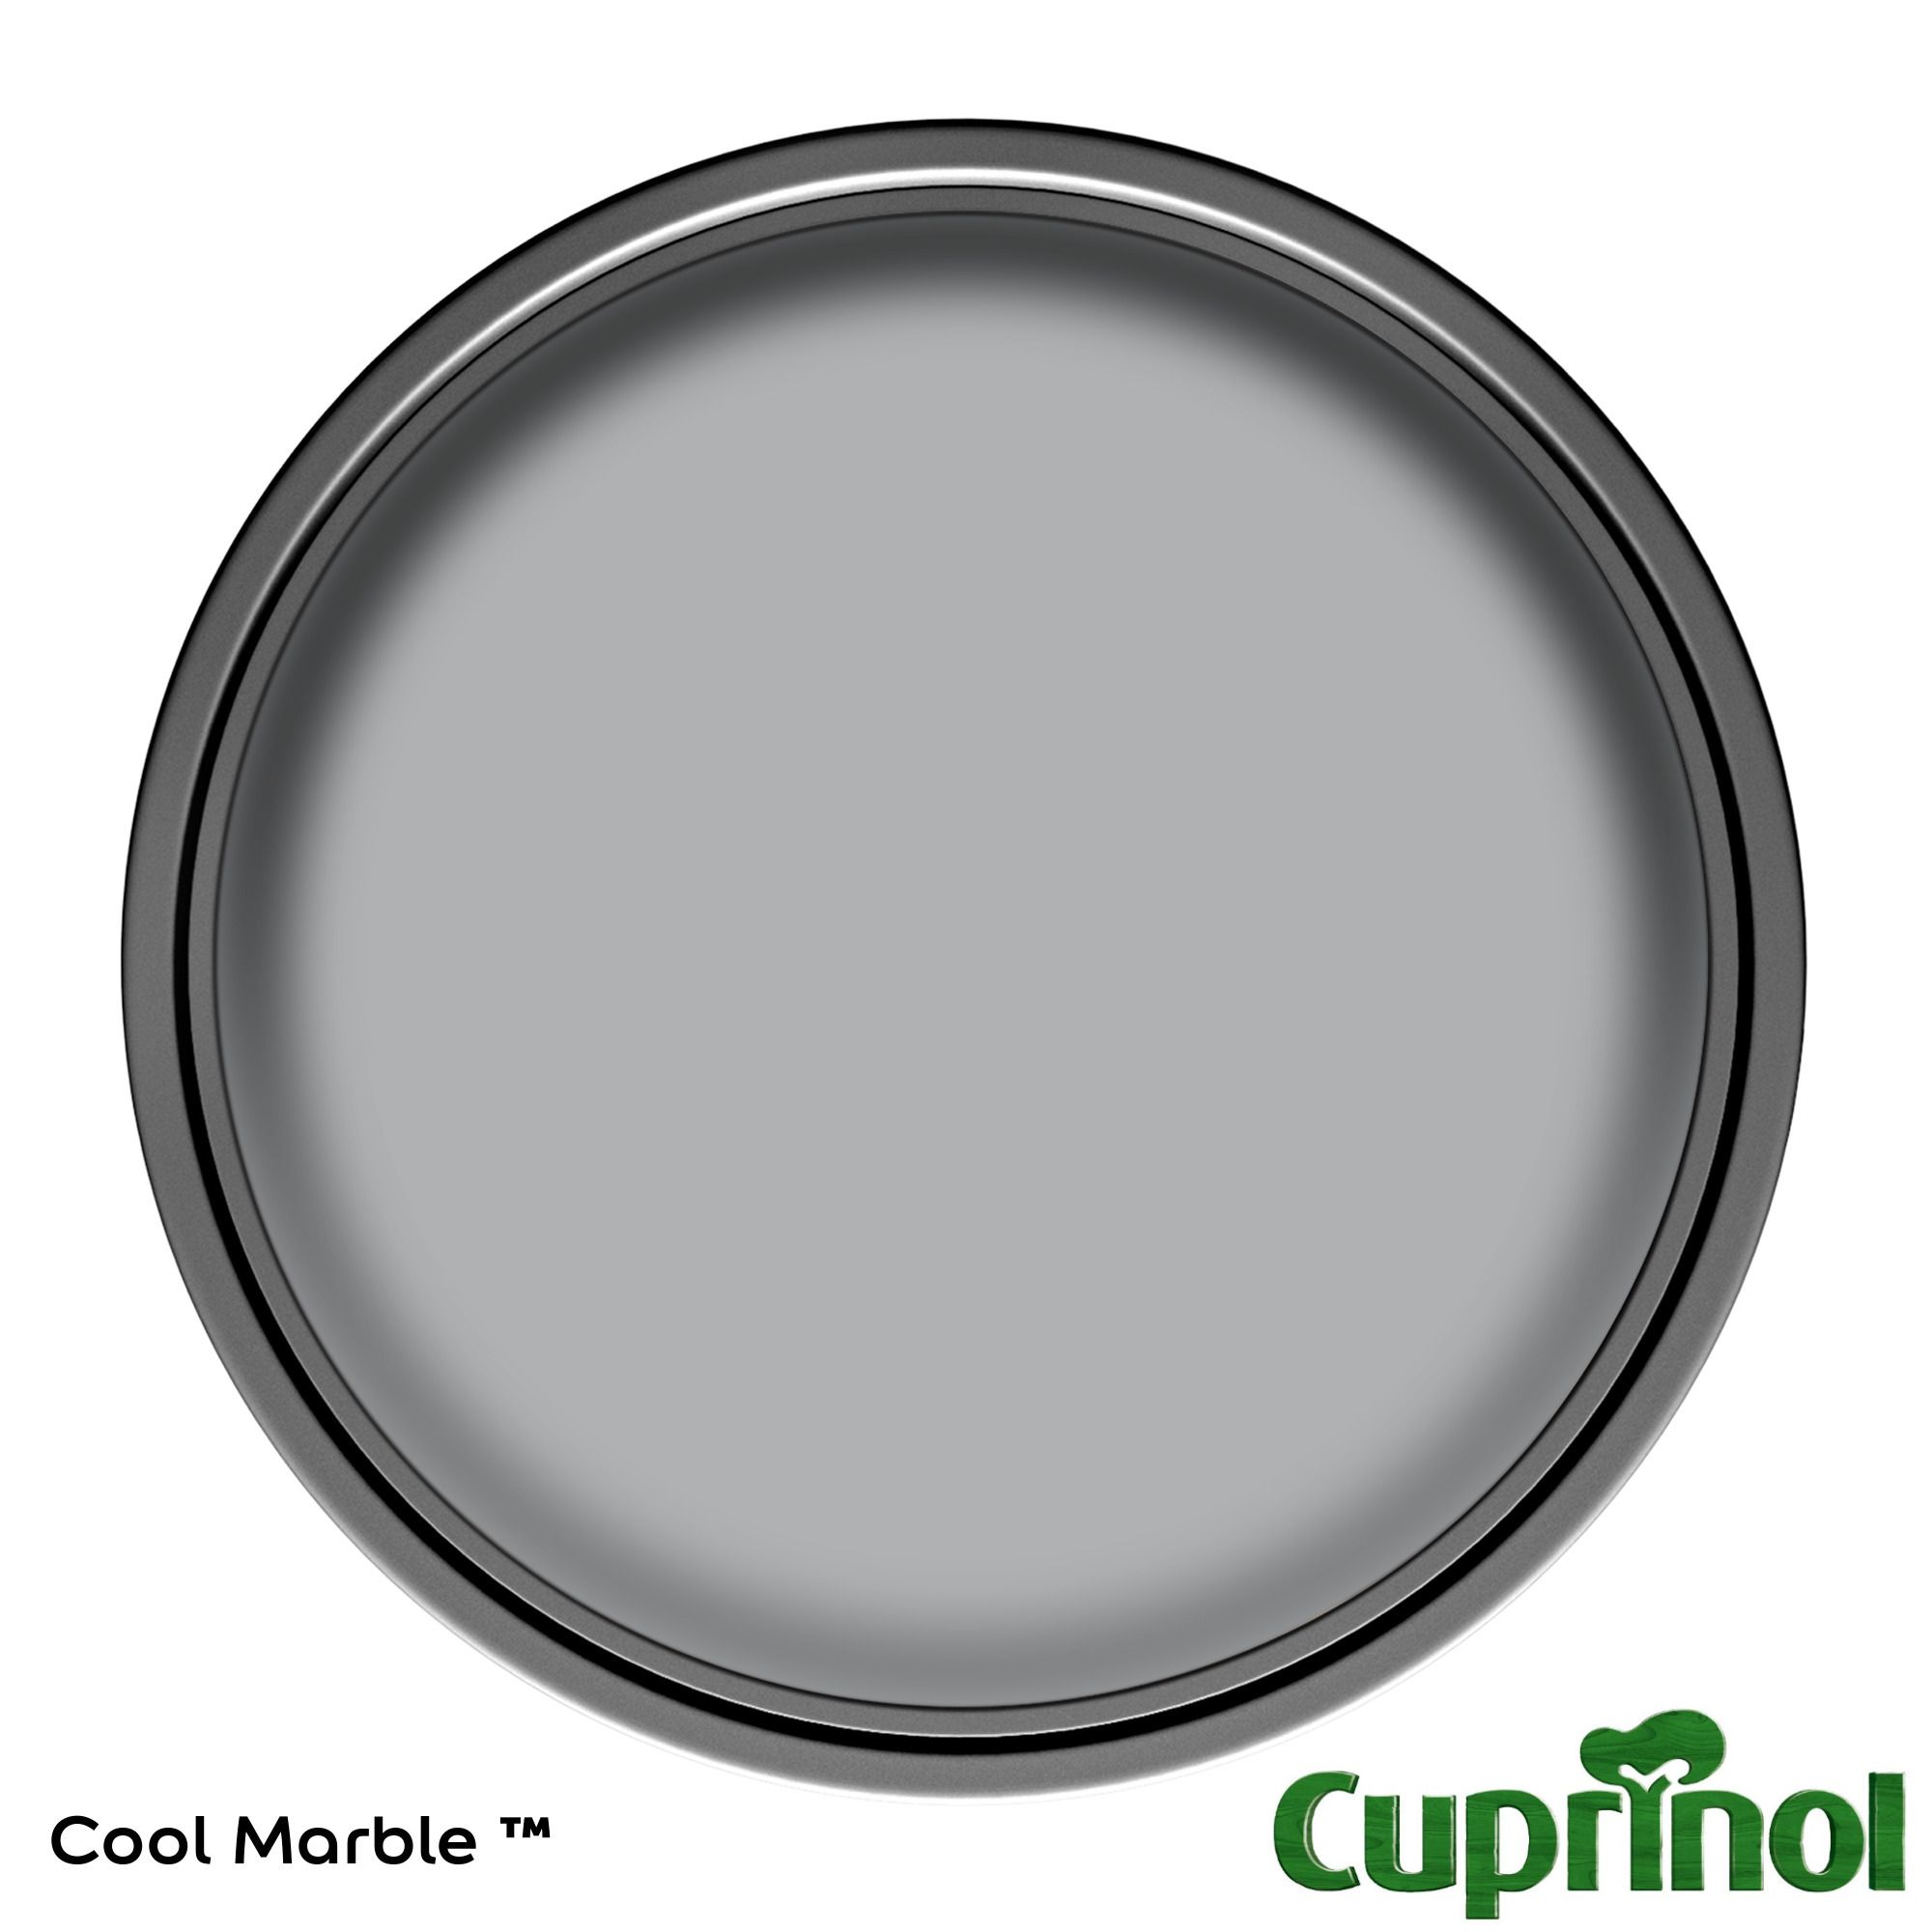 Cuprinol Garden shades Cool Marble Matt Garden Paint, 125ml Tin